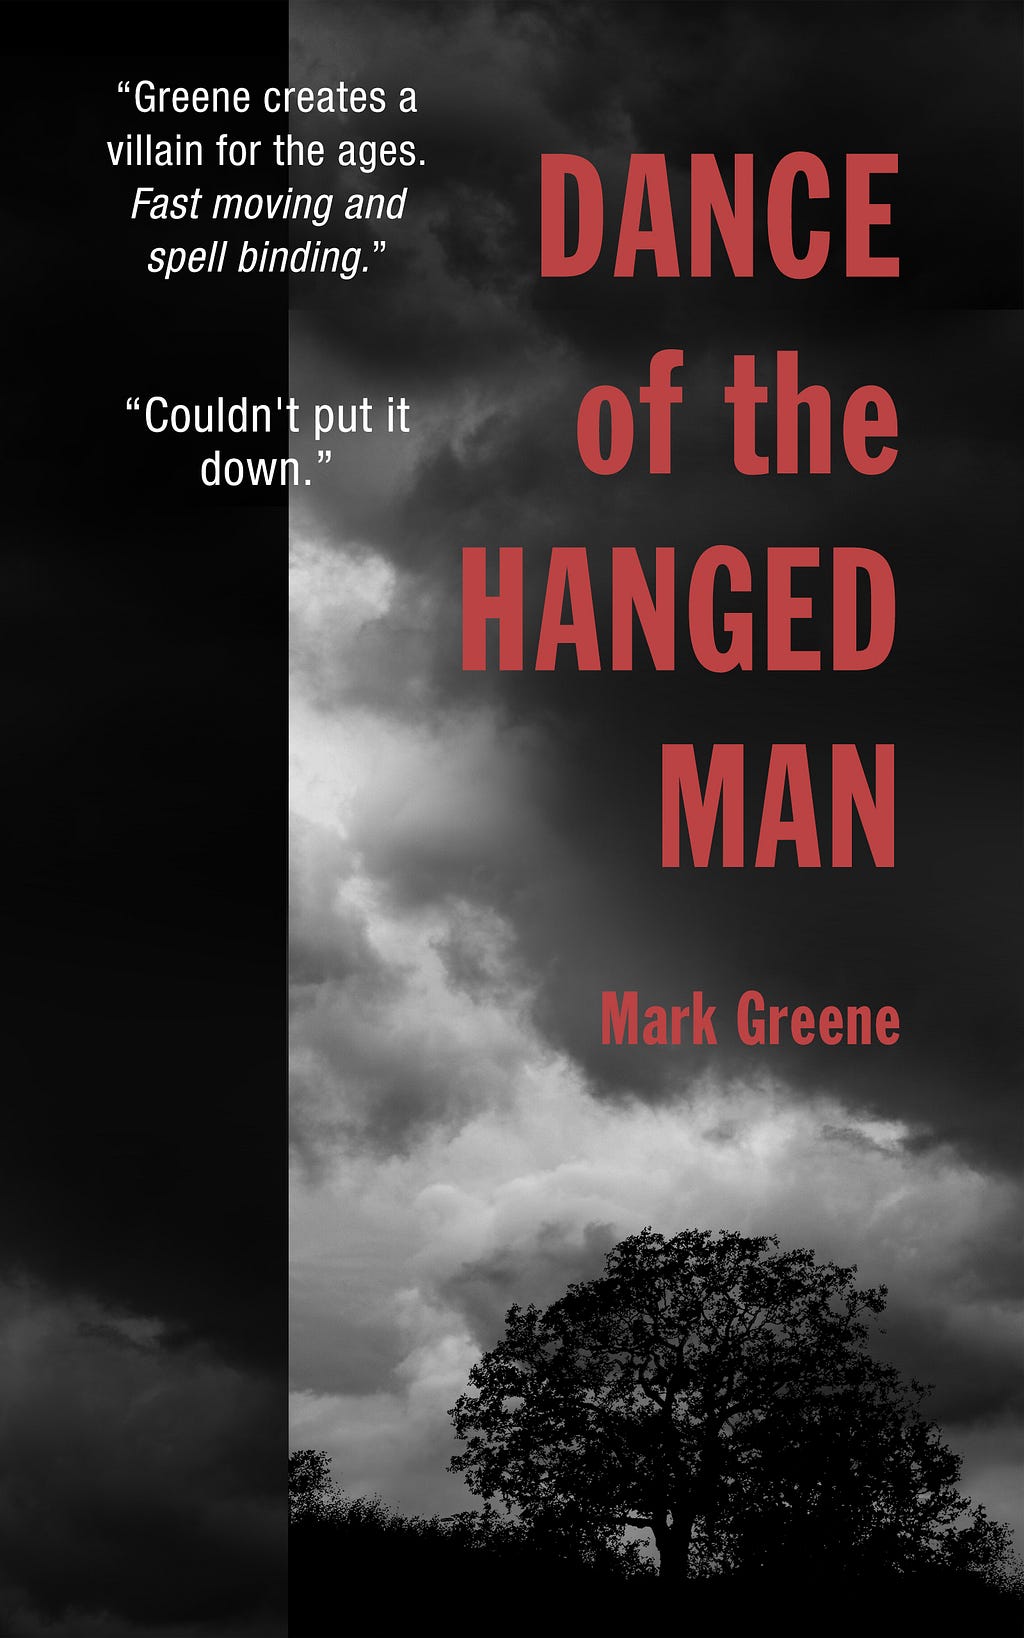 The cover of Mark Greene’s new novel Dance of the Hanged Man.